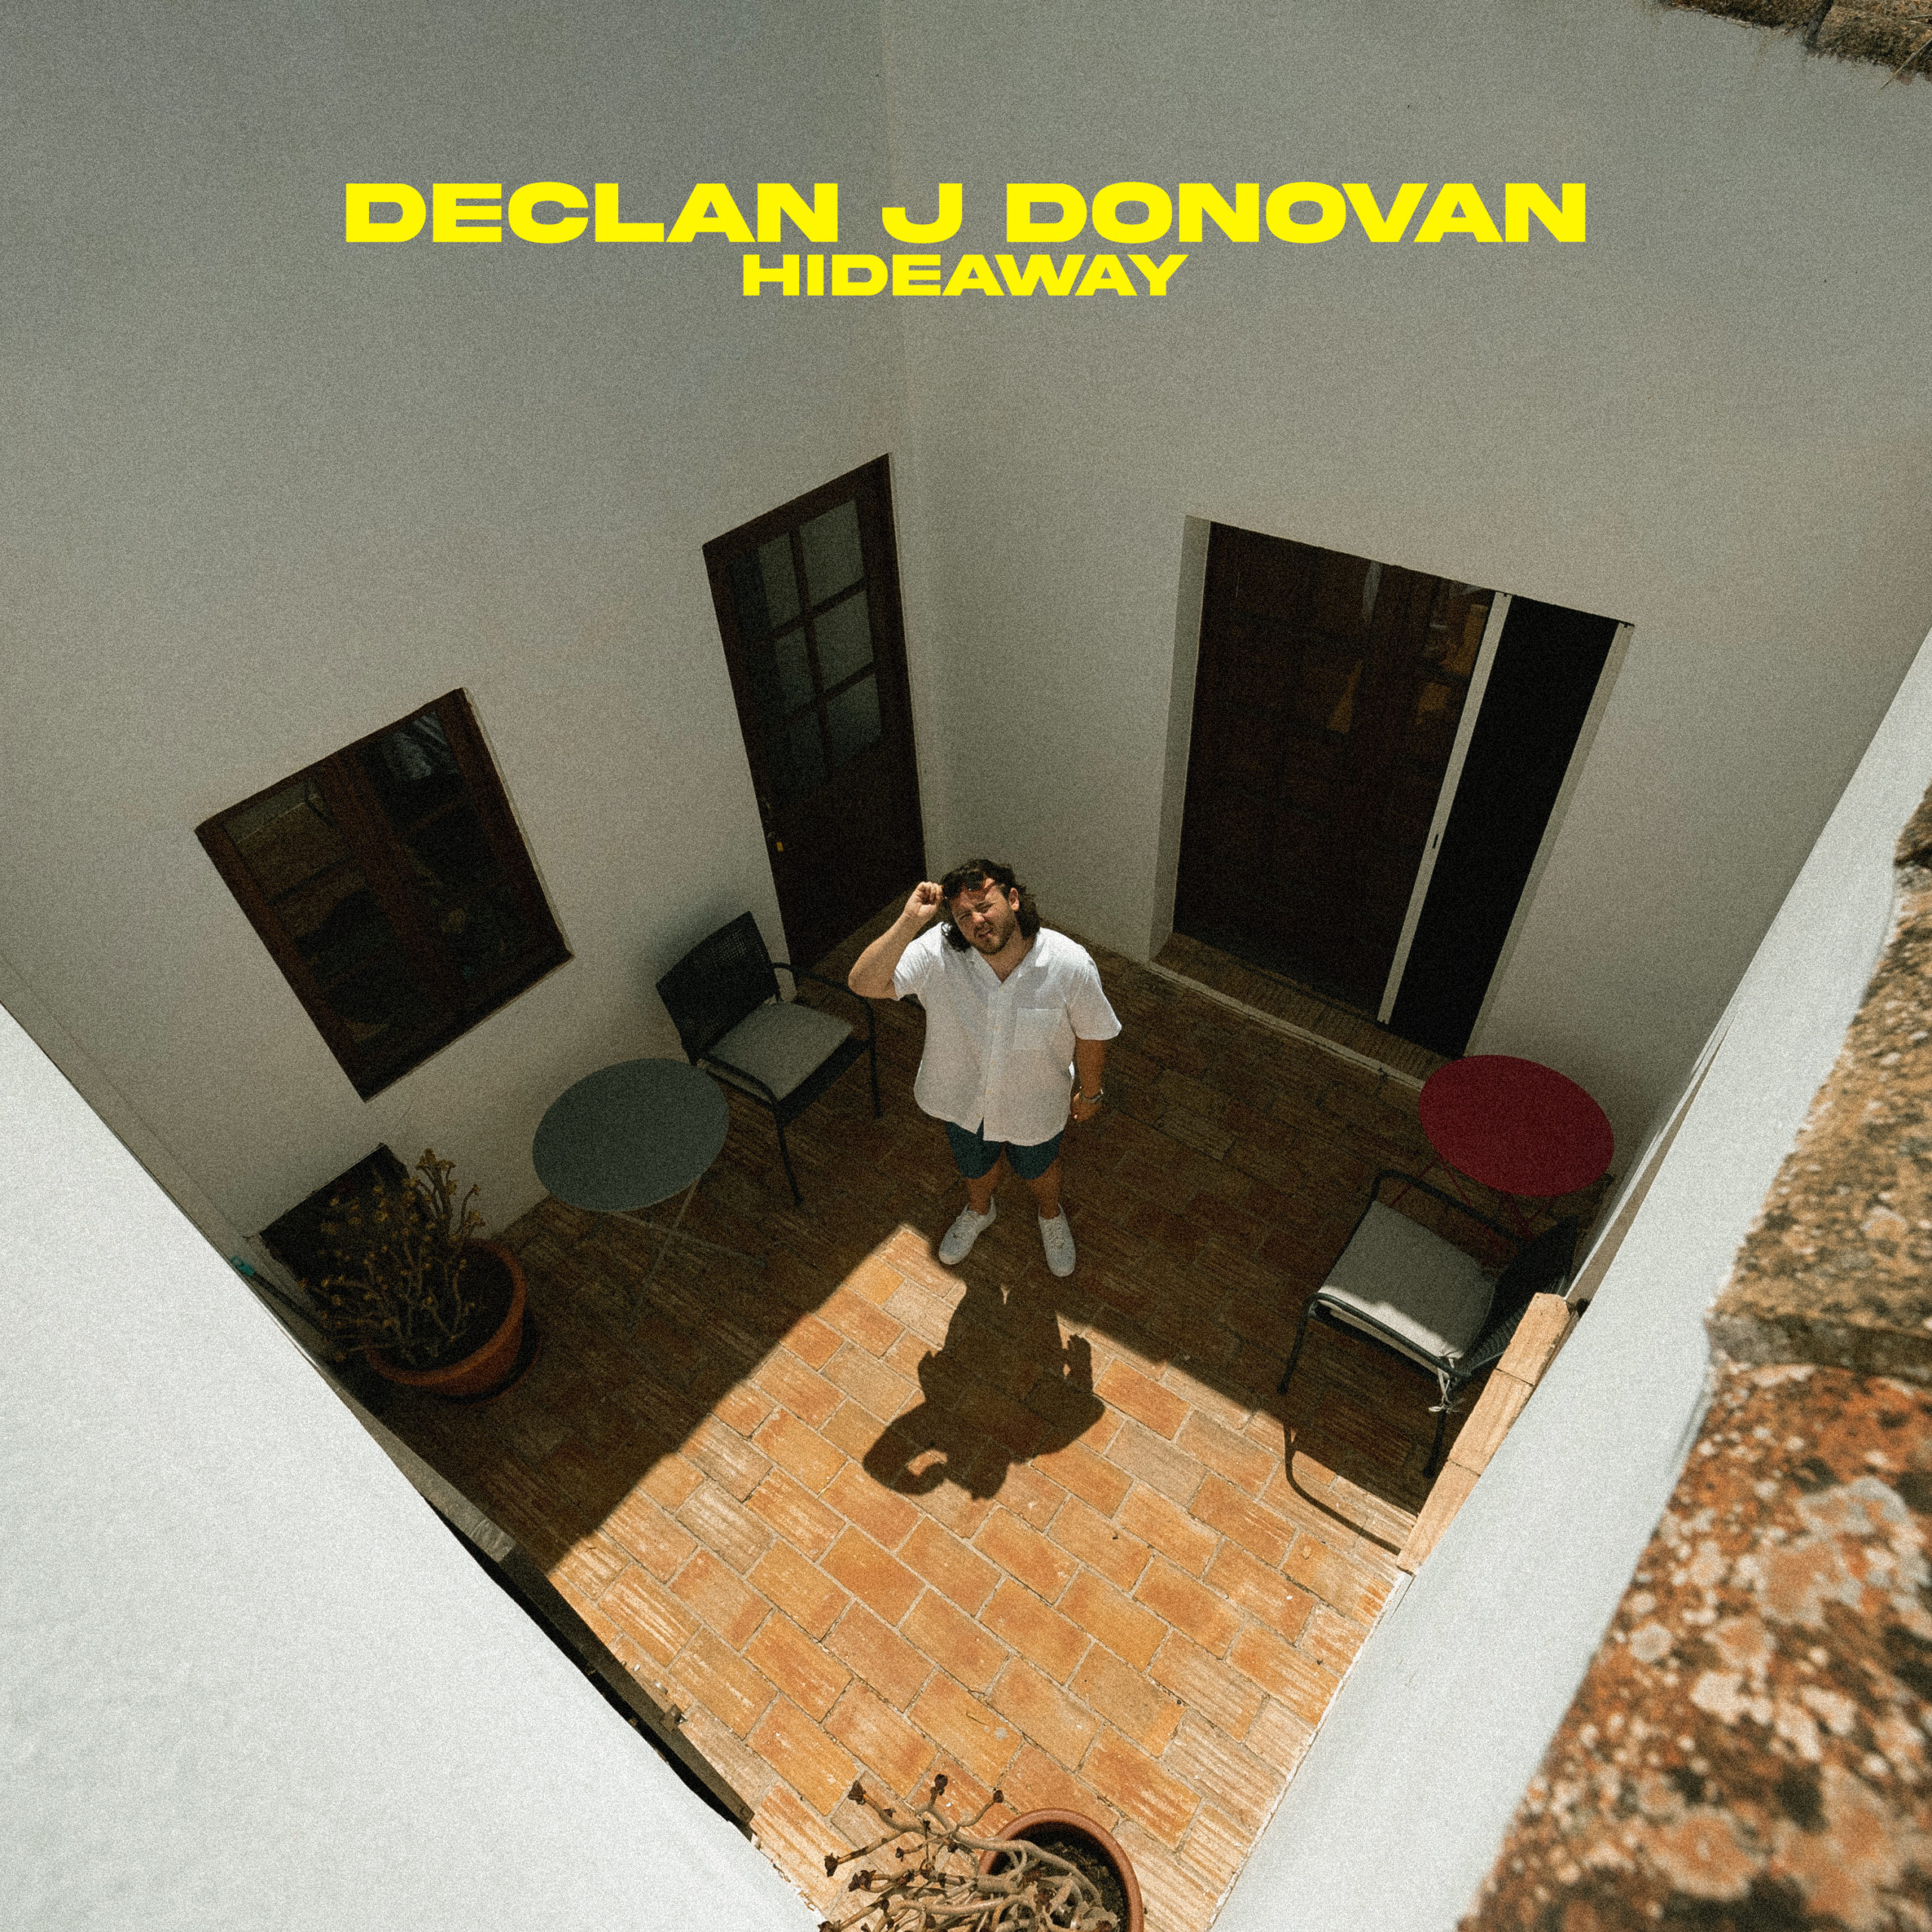 Declan J Donovan Hideaway scaled